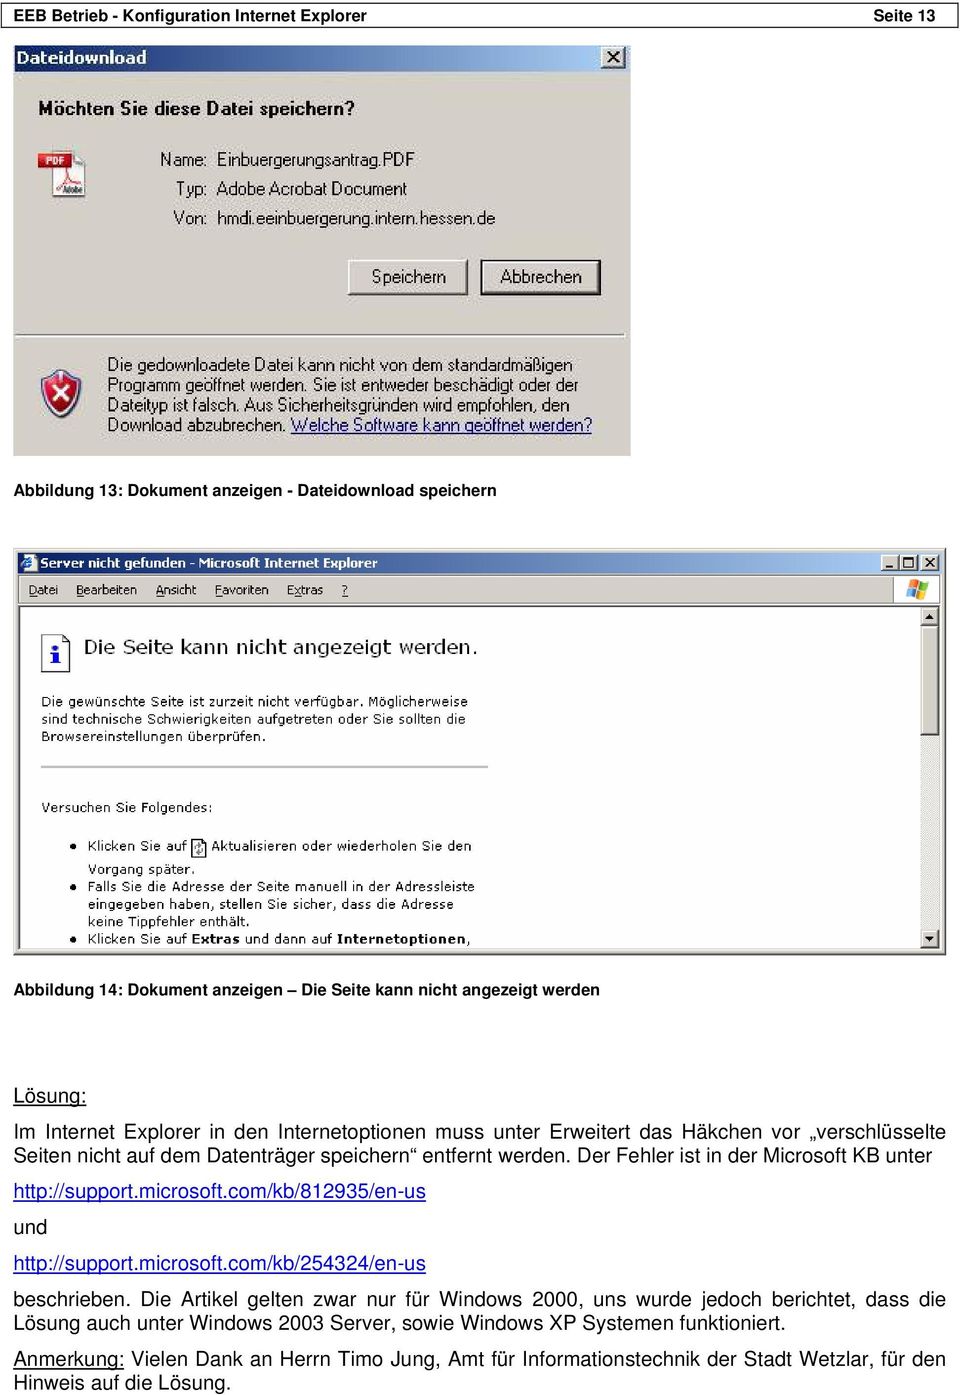 Der Fehler ist in der Microsoft KB unter http://support.microsoft.com/kb/812935/en-us und http://support.microsoft.com/kb/254324/en-us beschrieben.